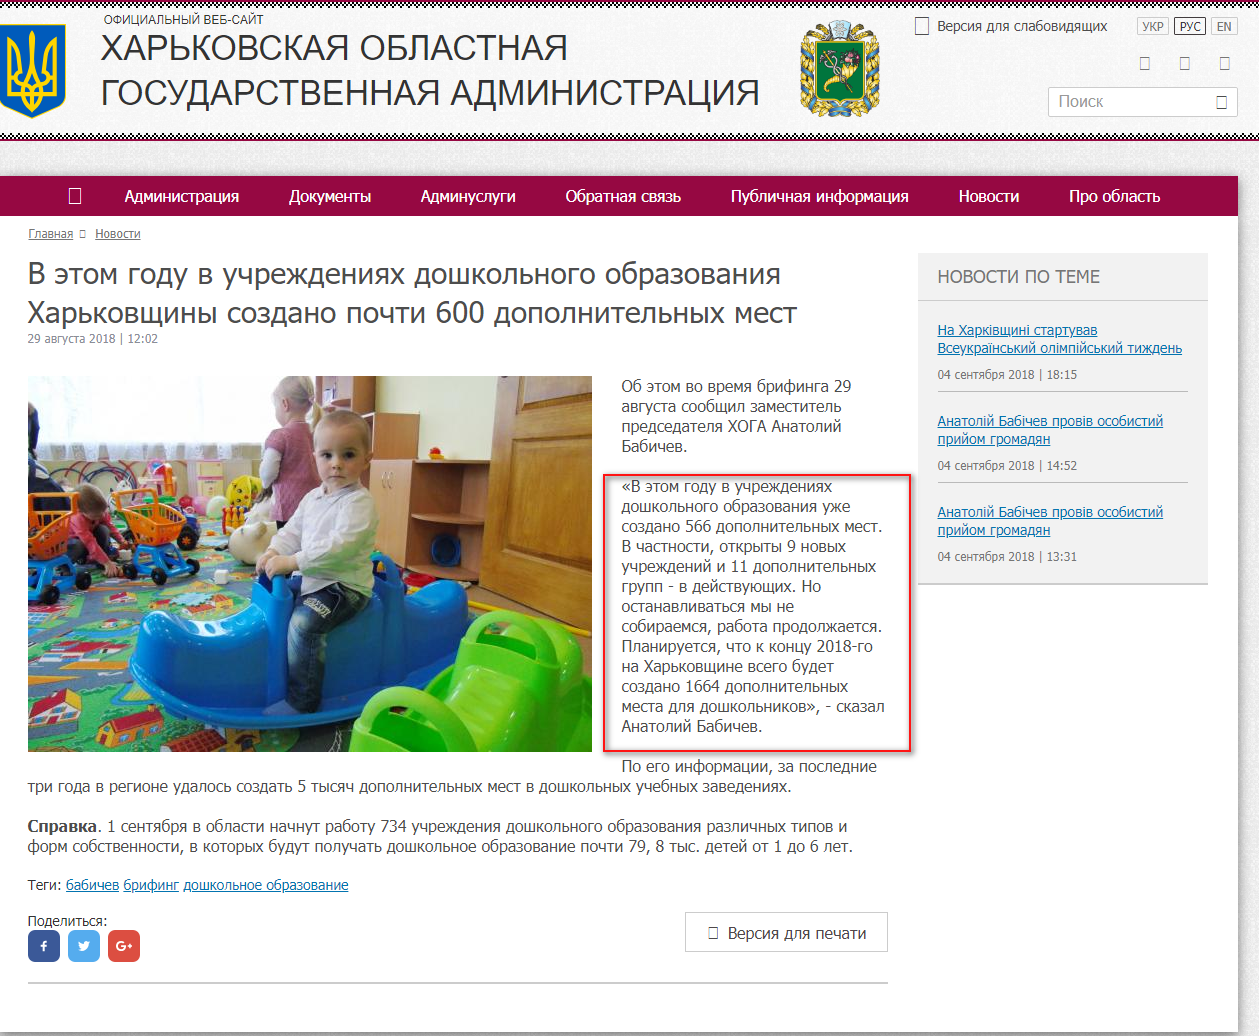 http://kharkivoda.gov.ua/ru/news/94515